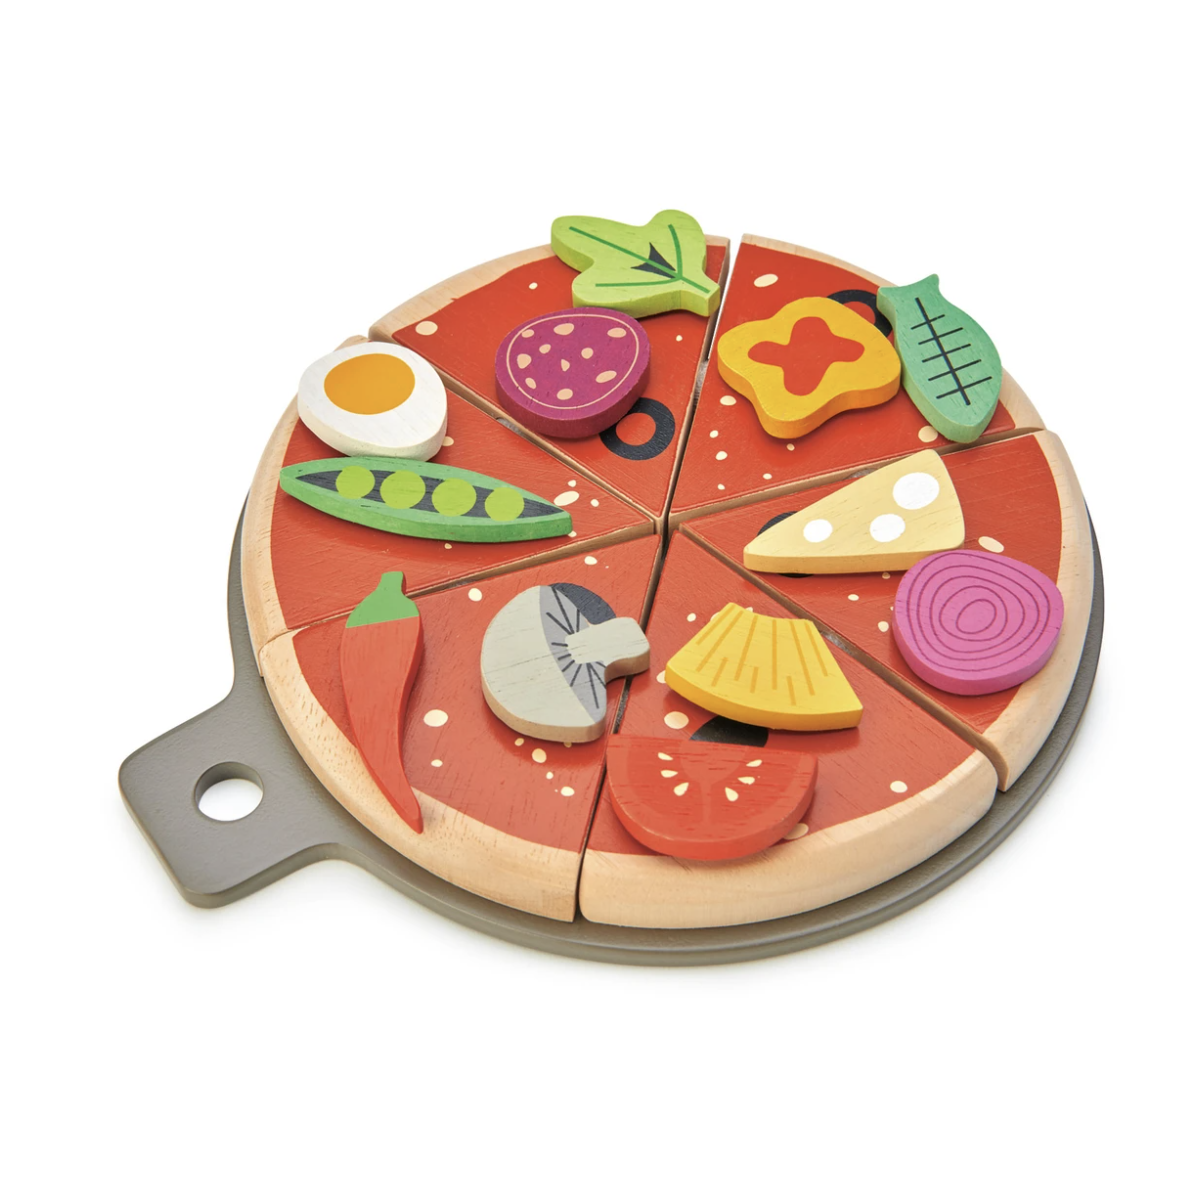 Melissa & Doug Wooden and Felt Pizza Play Set (41 Pieces) 